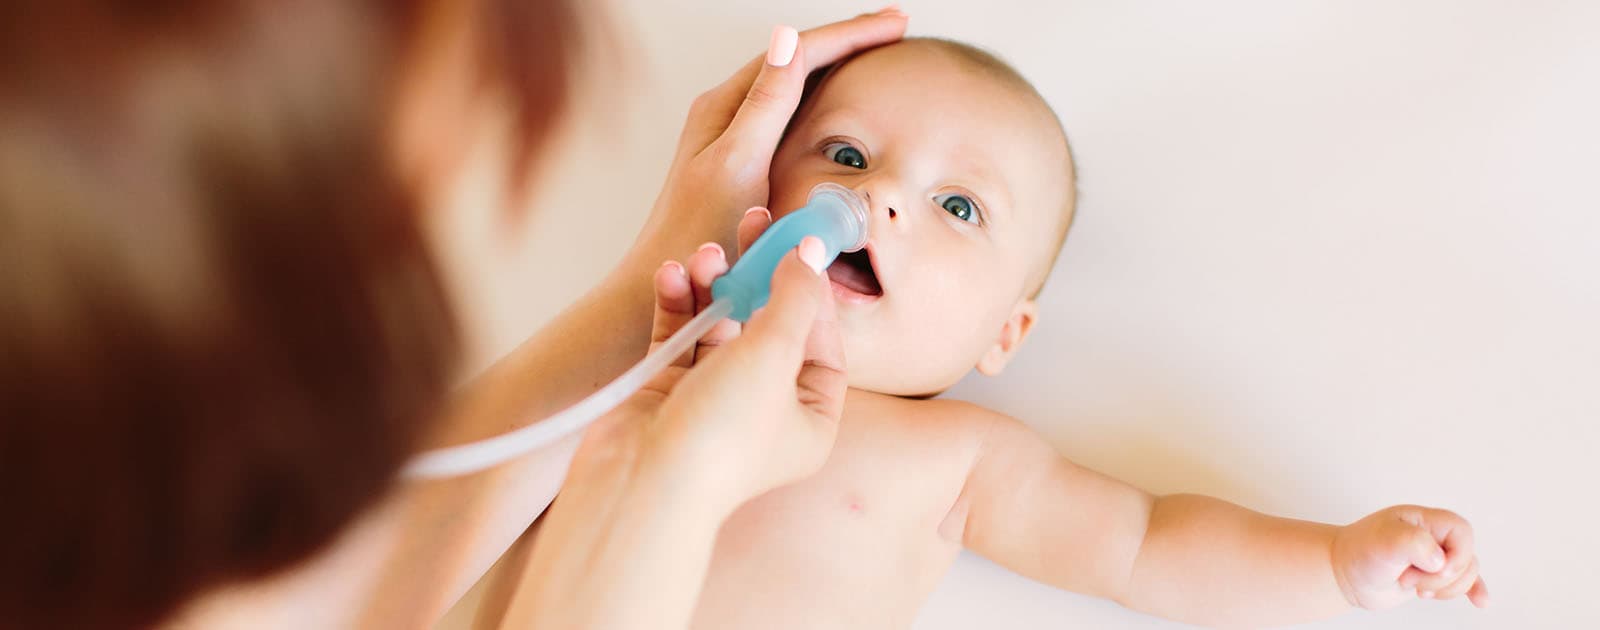 Cómo descongestionar la nariz de un bebé?: 5 estrategias - Tua Saúde